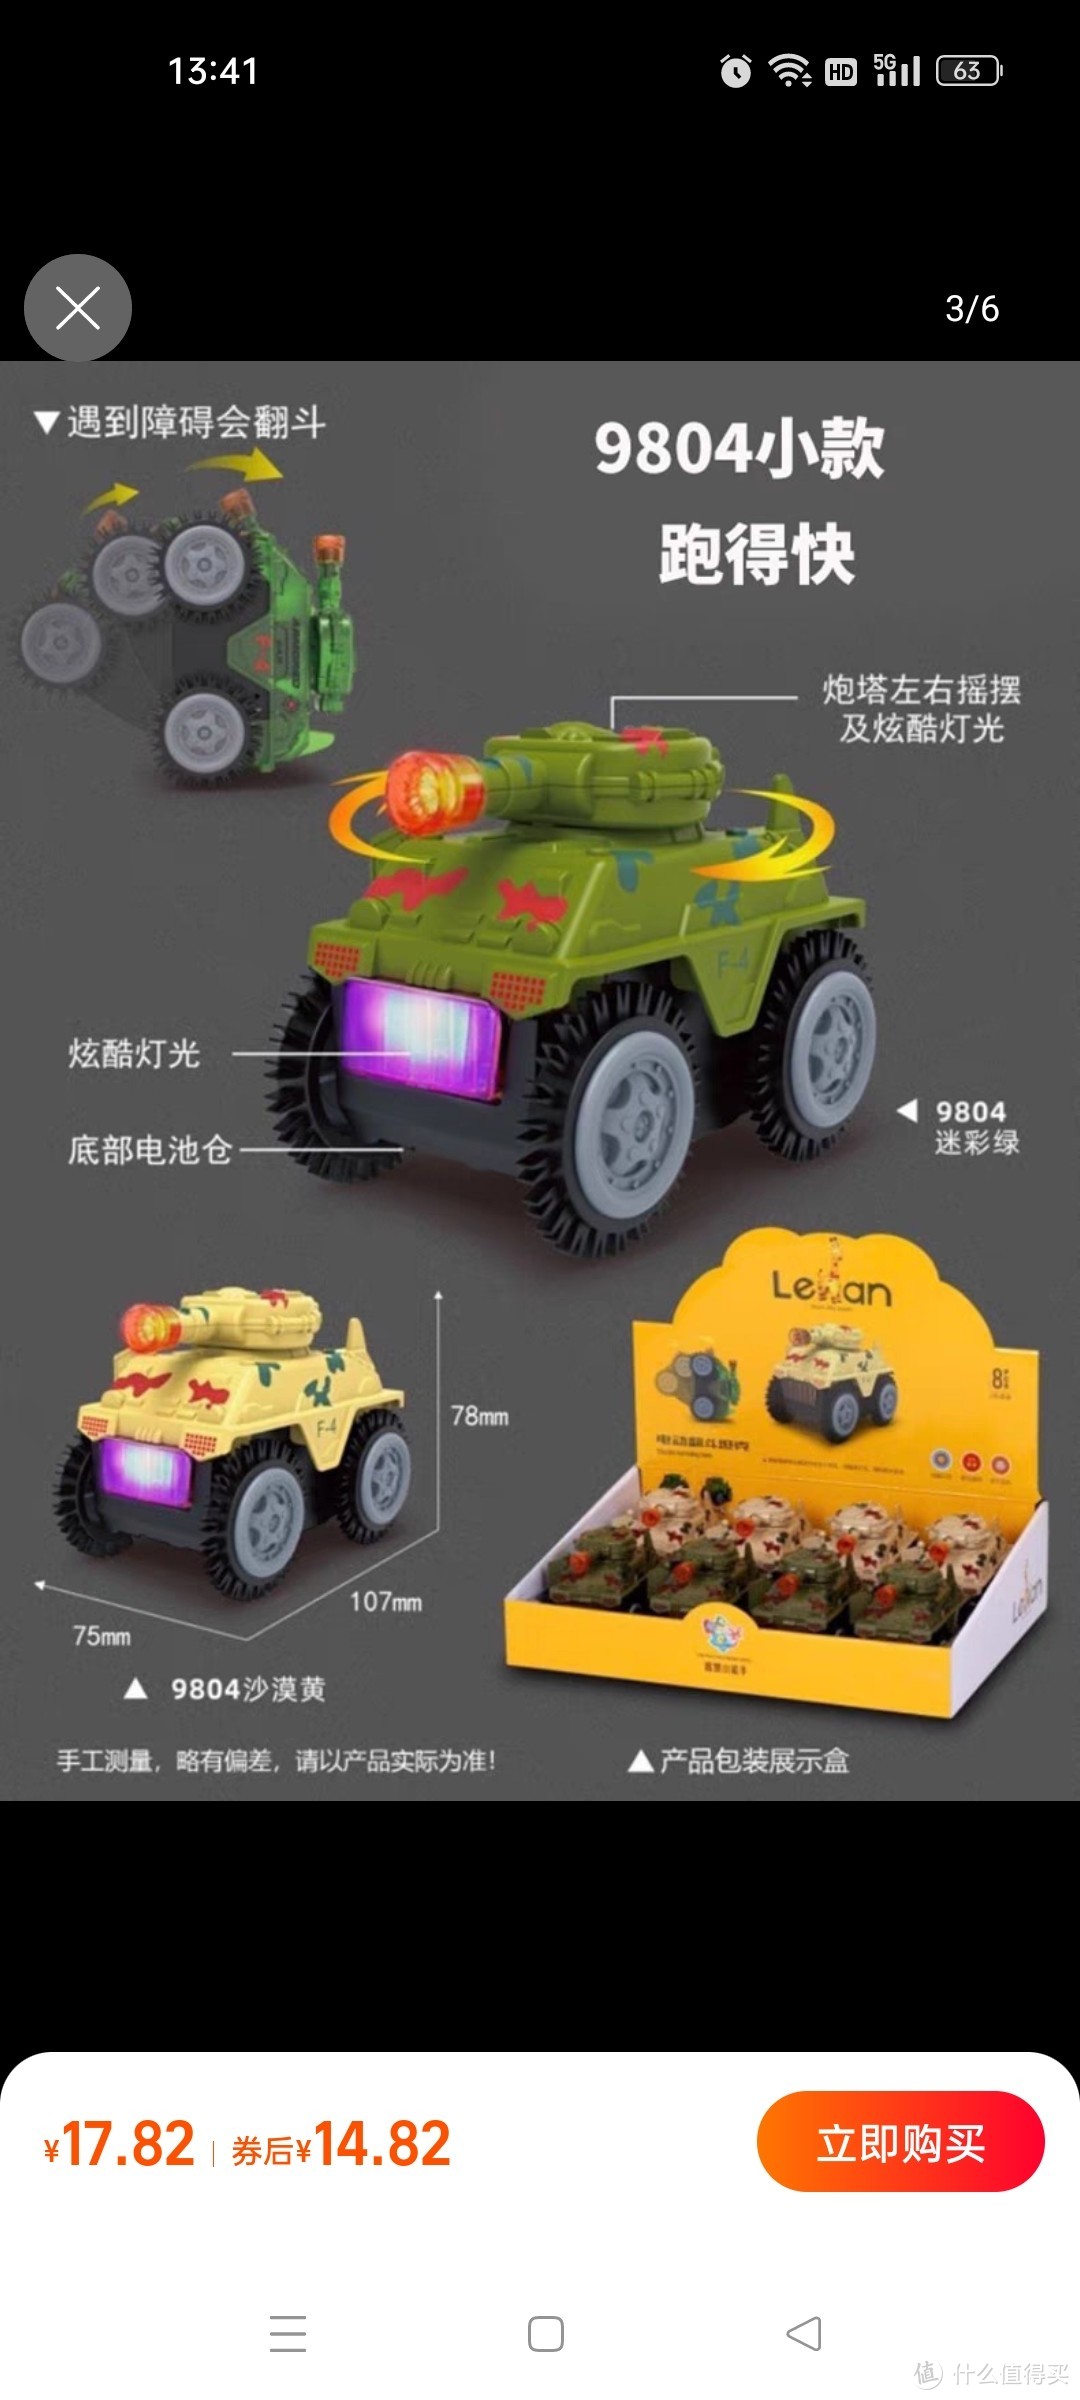 儿童电动声光玩具越野车男孩军事坦克装甲战车爬坡翻滚车生日礼物